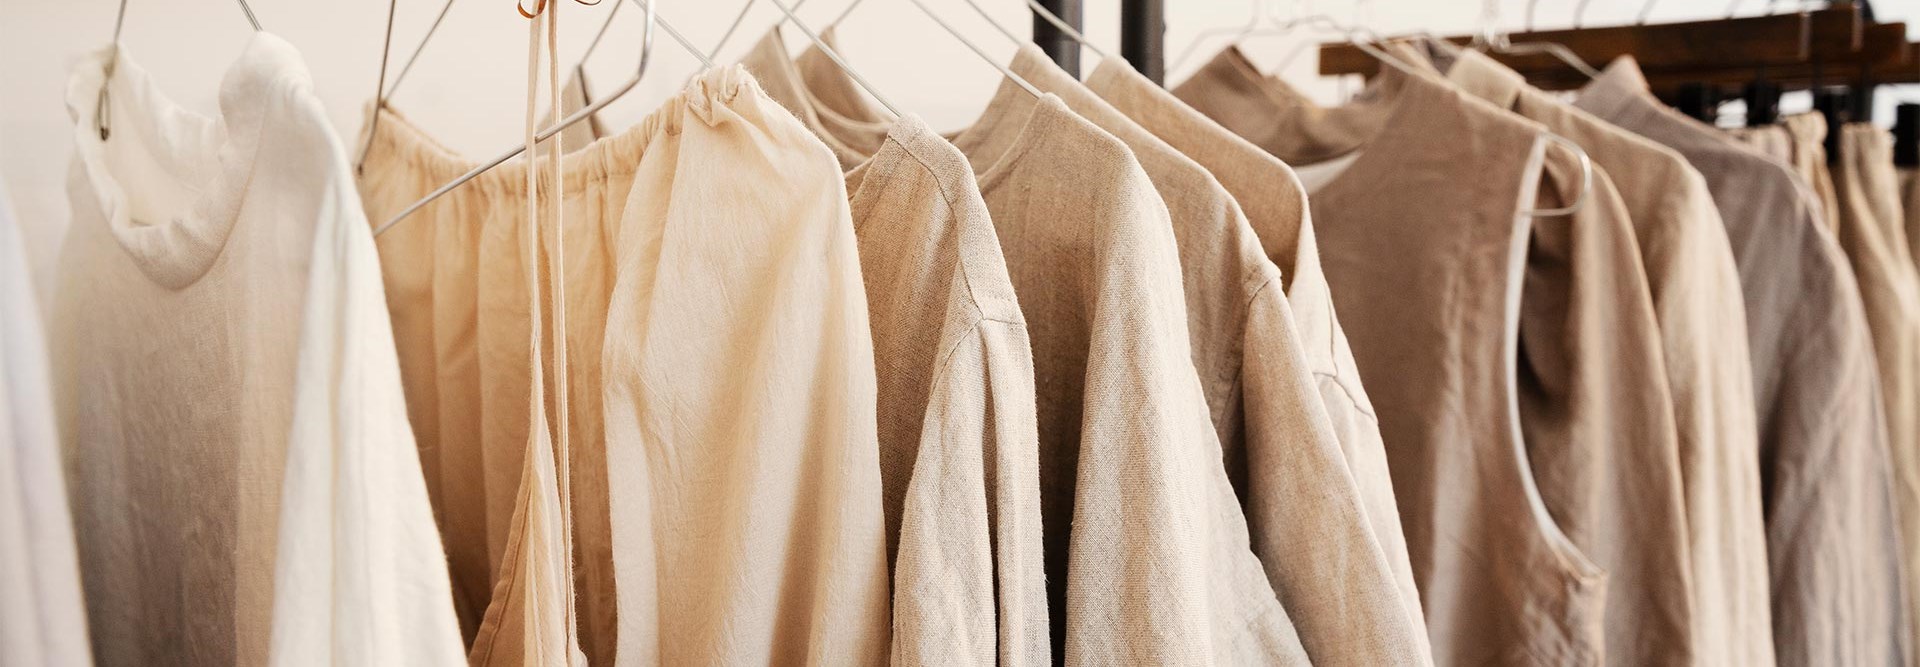 Moda: a sustentabilidade pode começar no seu armário